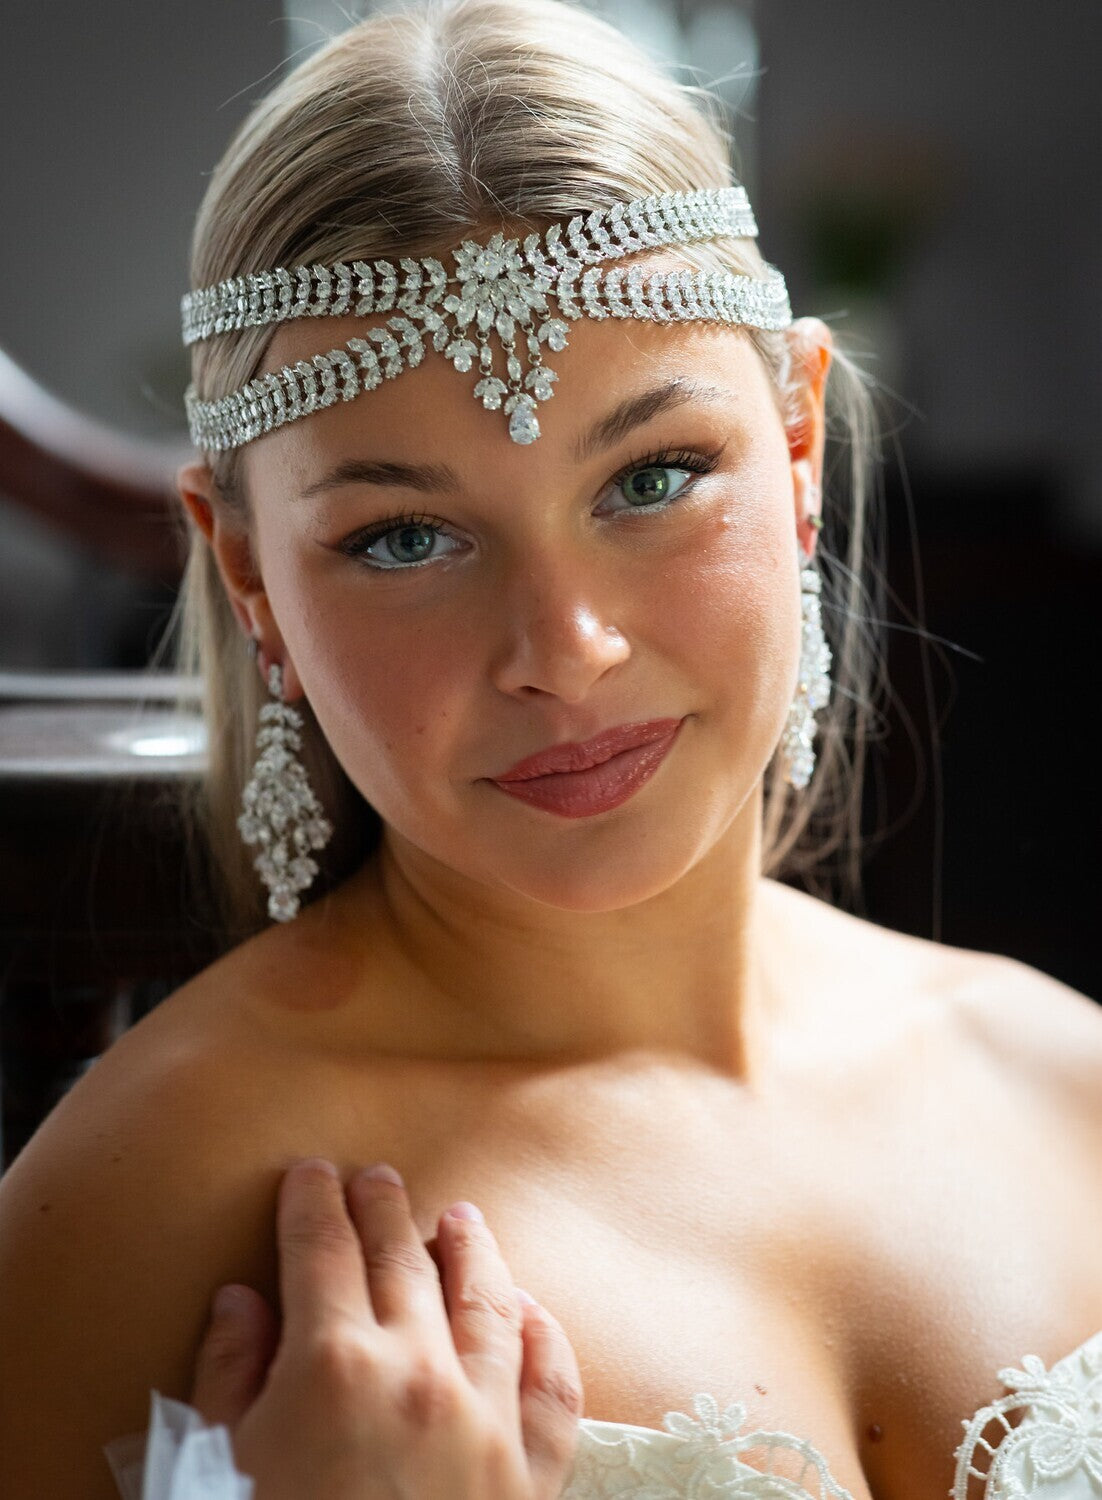 Shantal - Stunning Forehead Crystal wedding headpiece